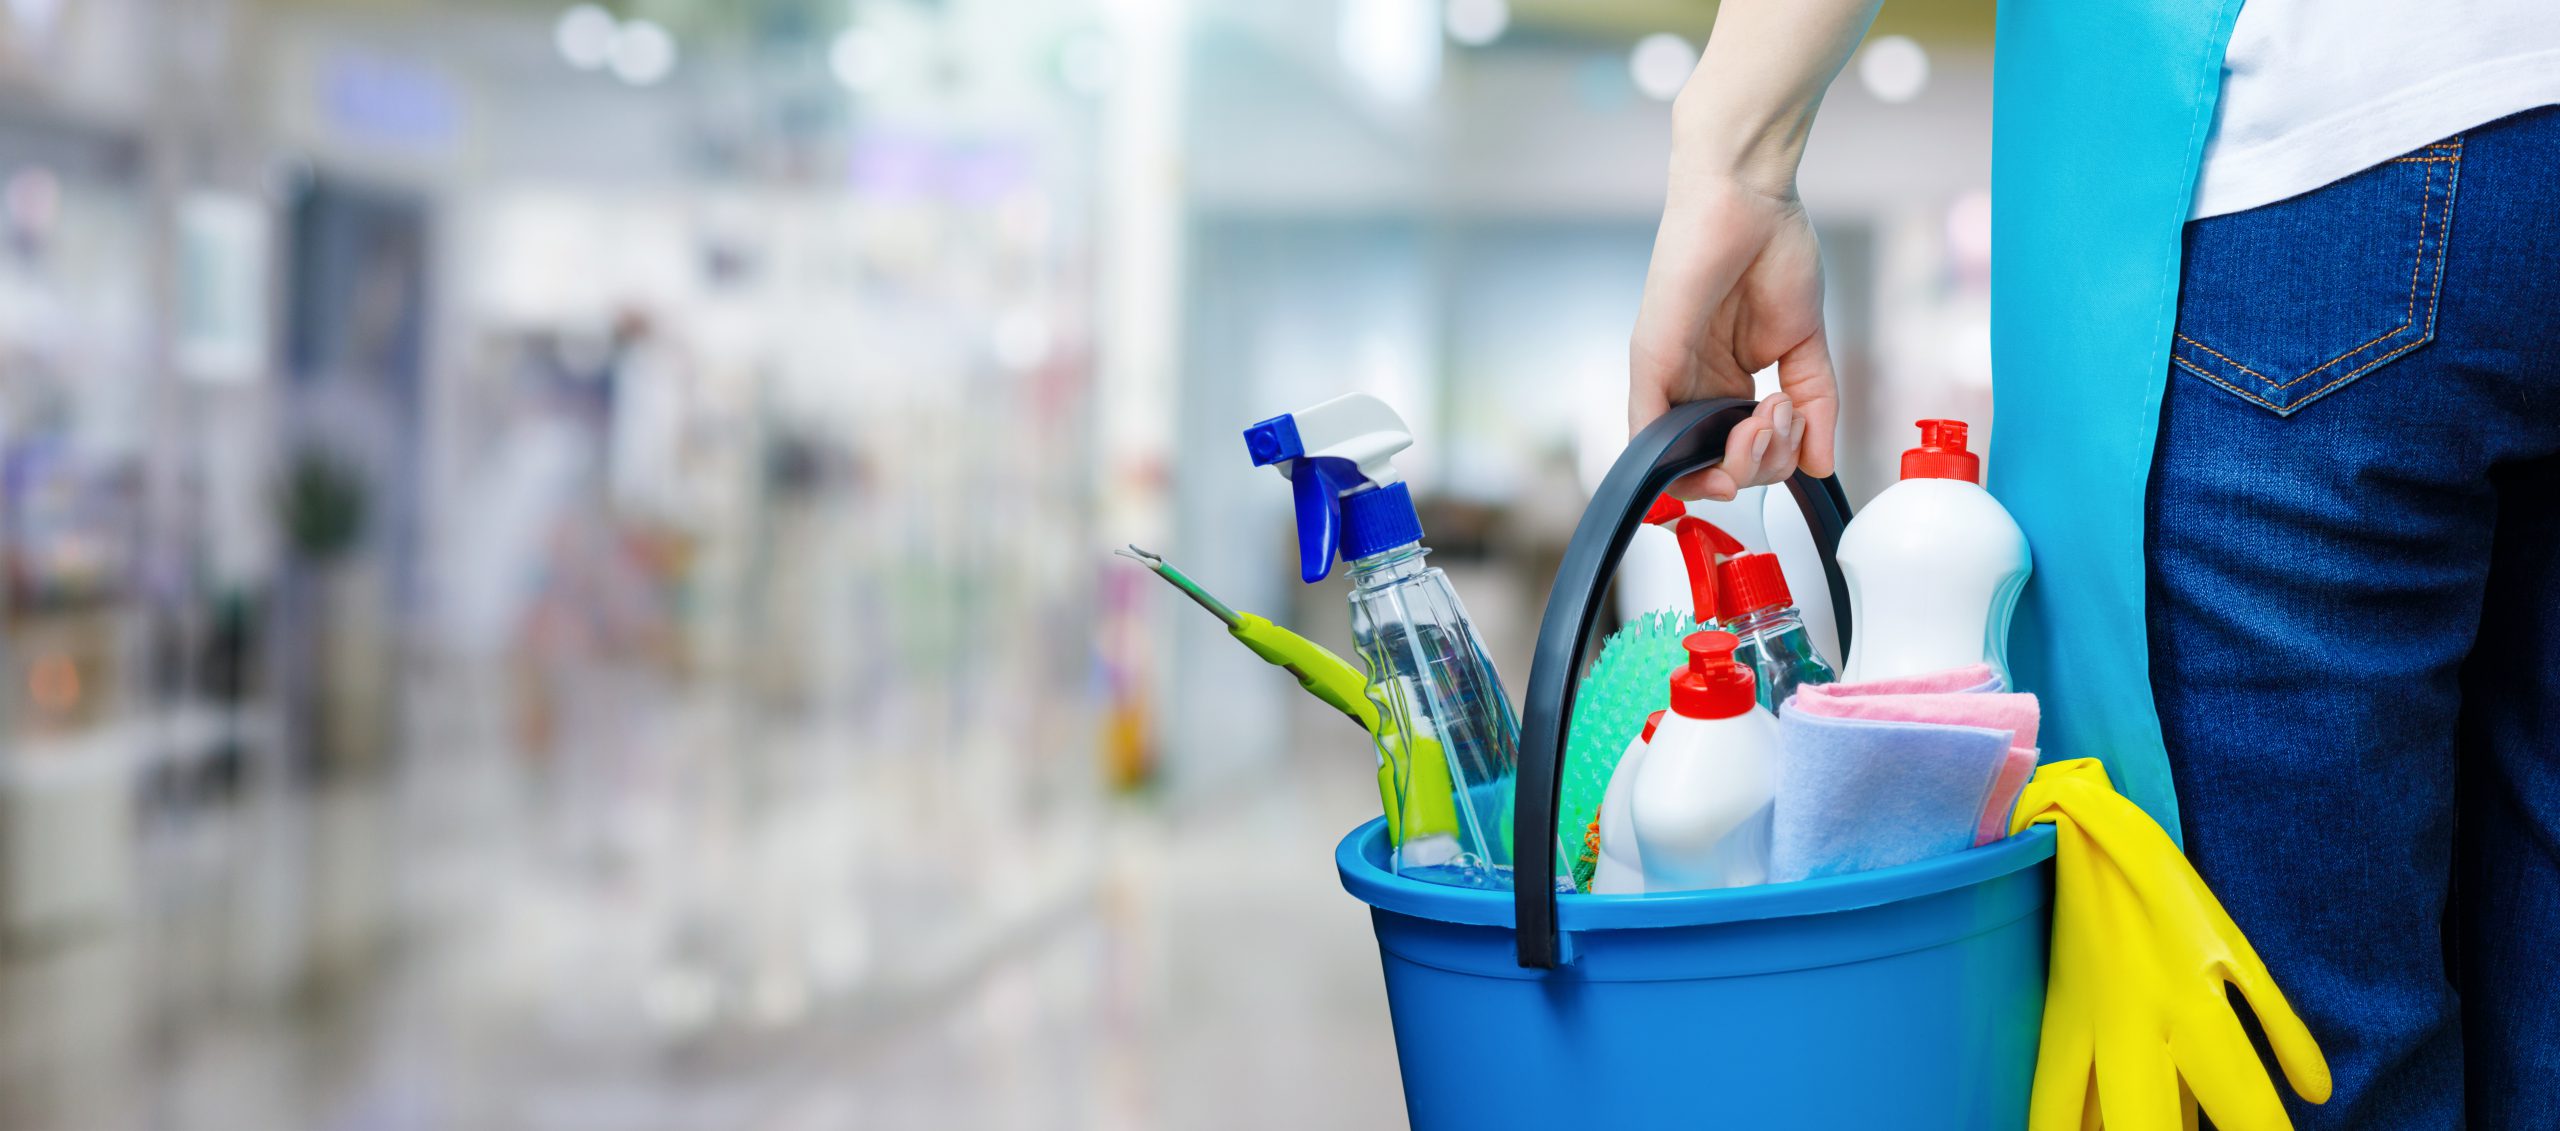 Le matériel de nettoyage adéquat pour votre aide-ménagère - Bomablog